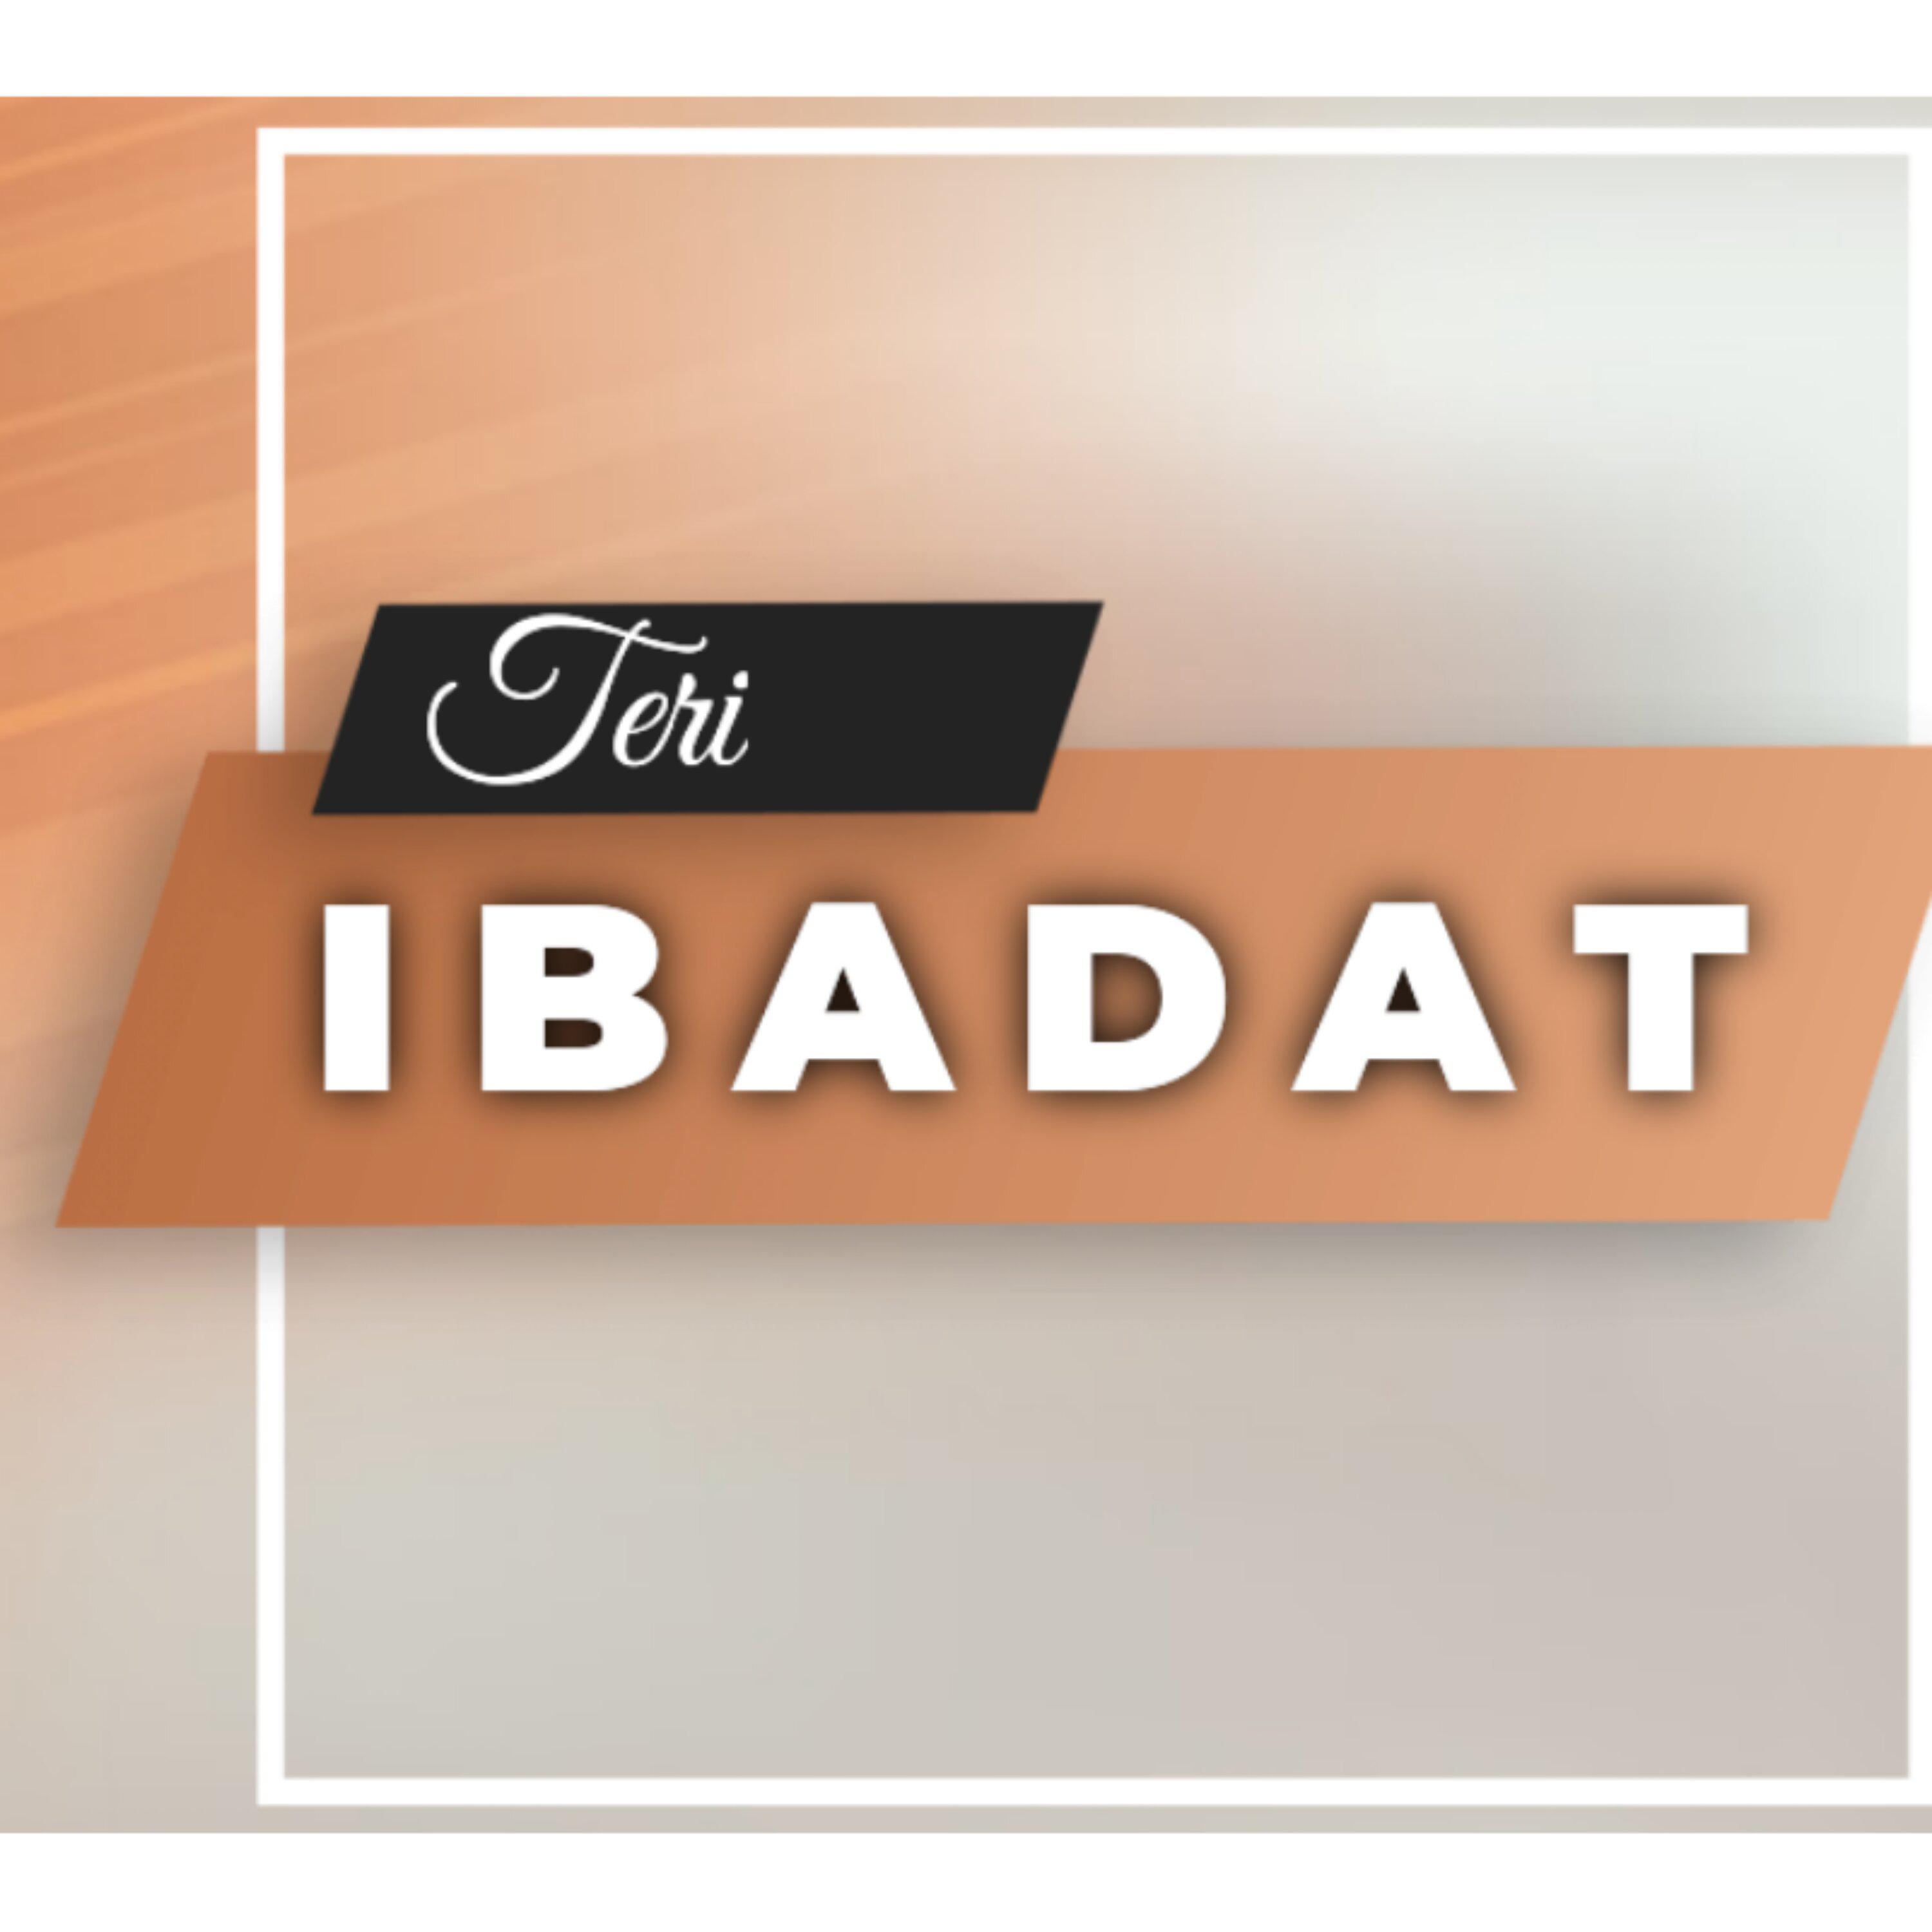 Постер альбома Teri Ibadat